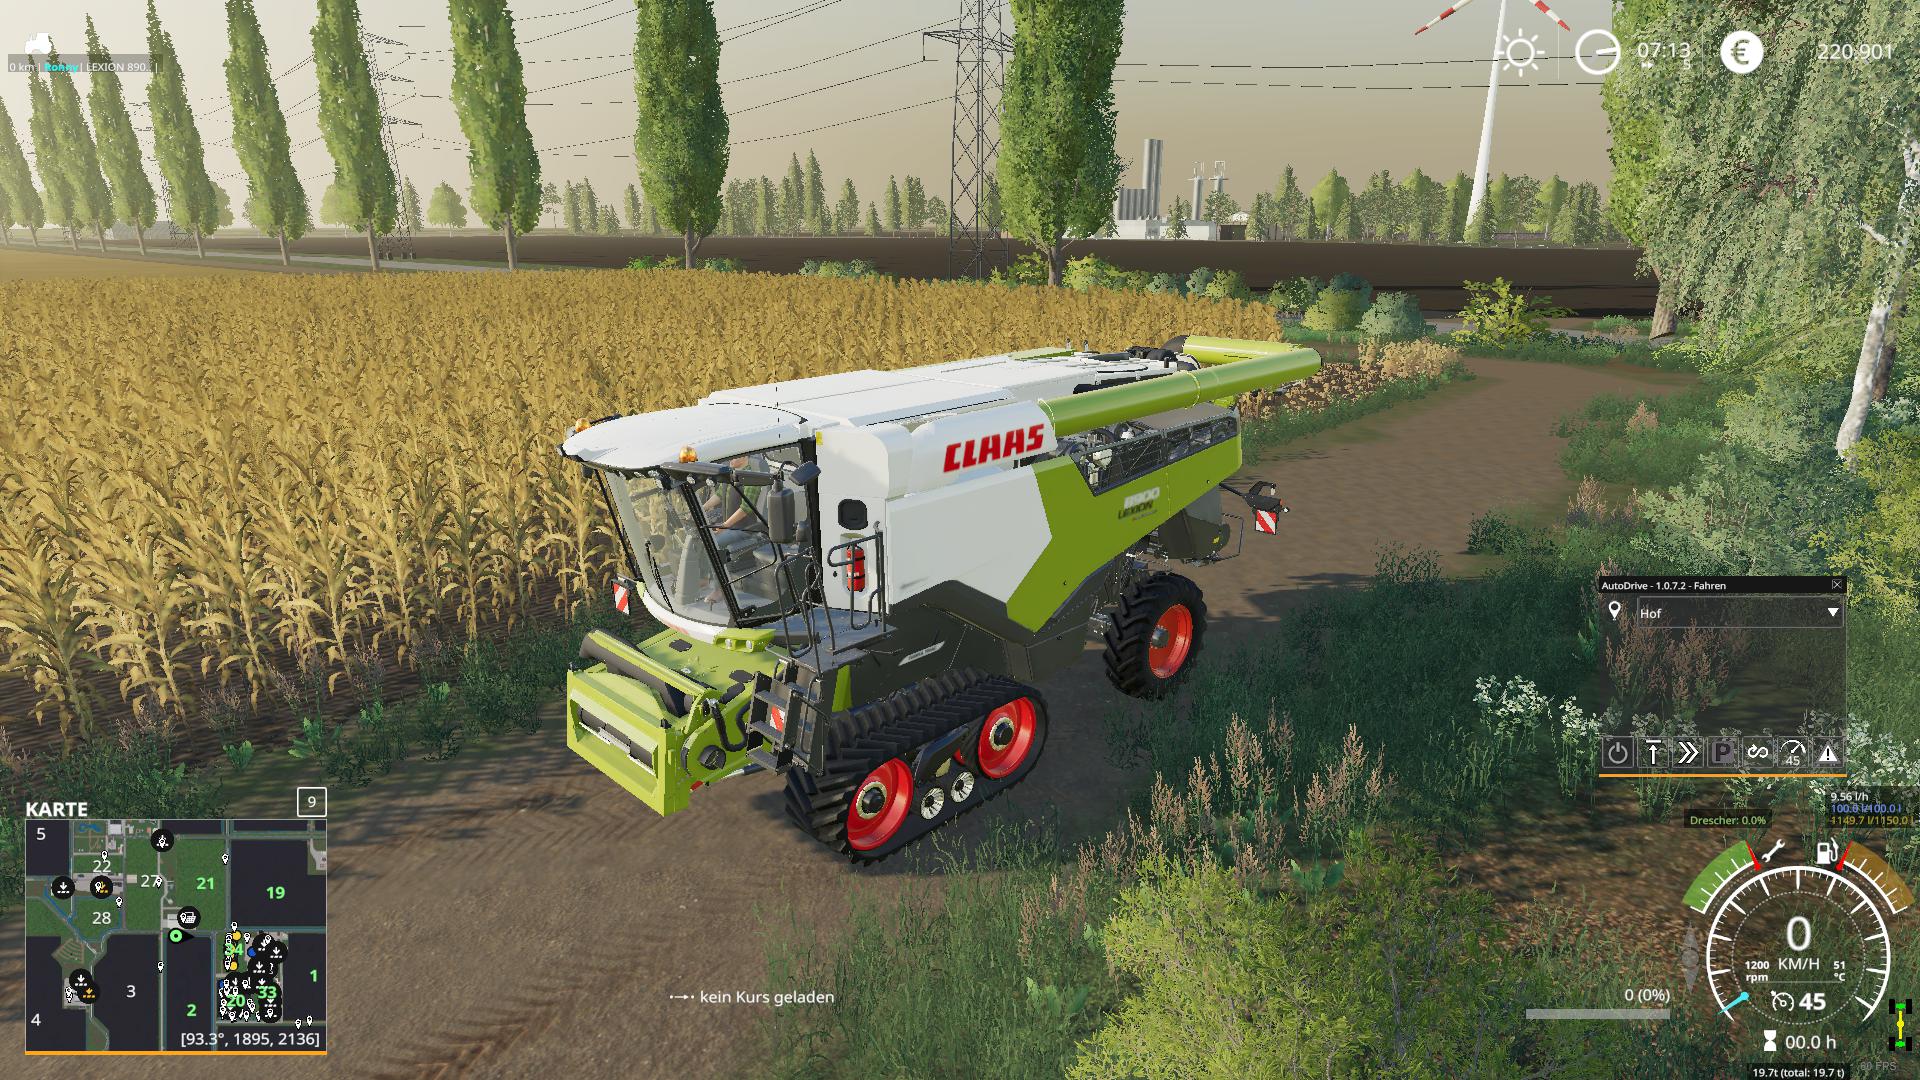 Claas Lexion 8900 V100 Fs19 Farming Simulator 19 Mod Fs19 Mod 1502